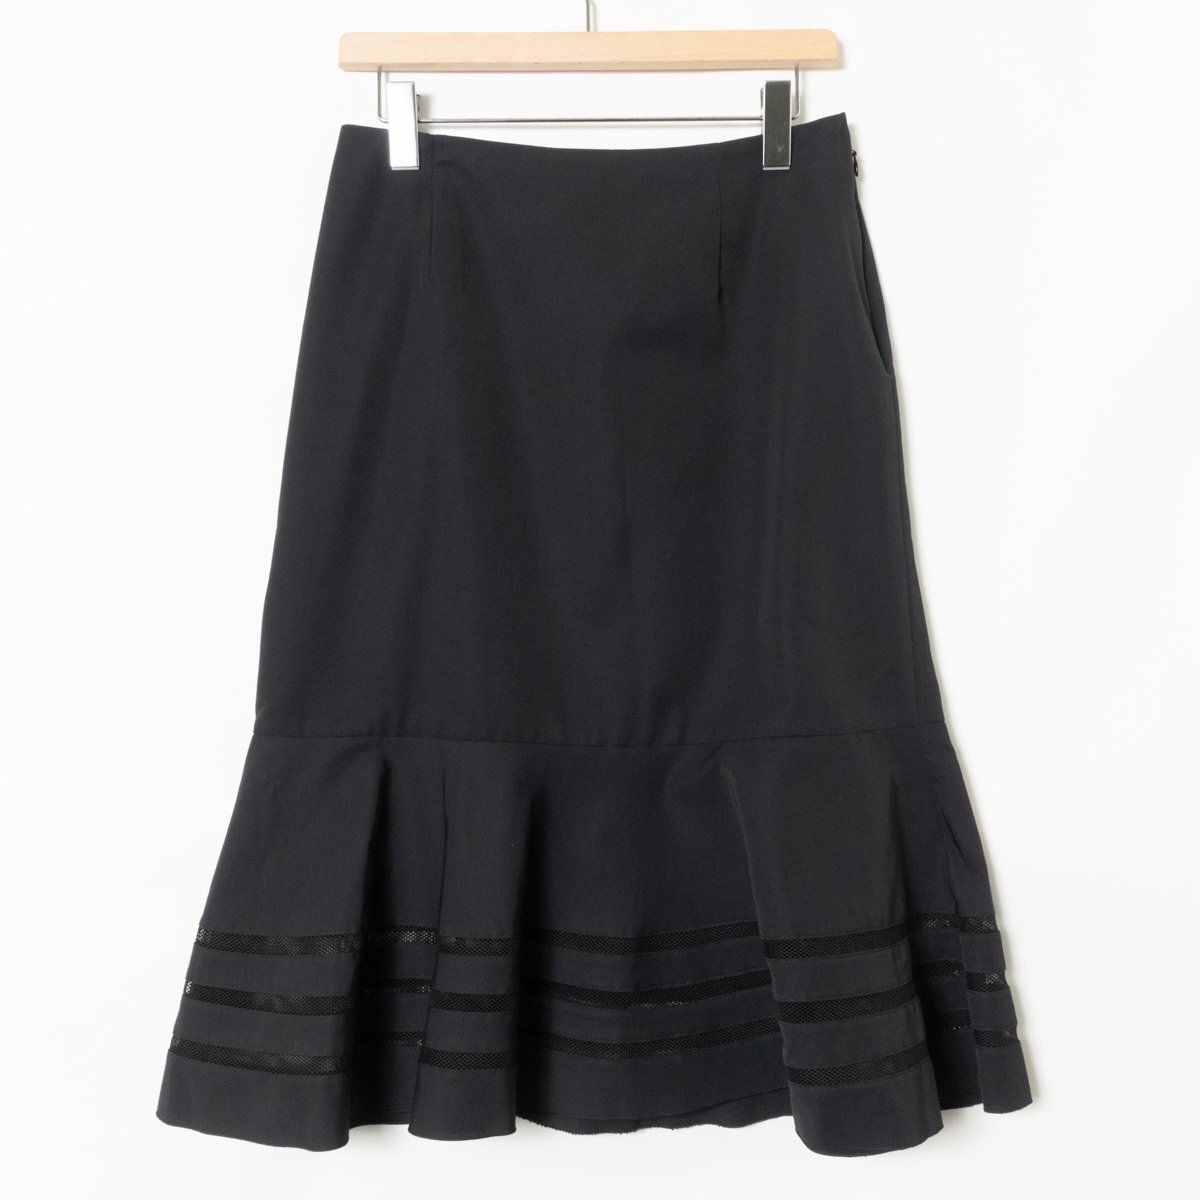 LAPINE ラピーヌ ロングスカート 裾メッシュ ボトムス サイドジップ 11 綿 コットン ブラック 黒 綺麗め カジュアル 婦人服の画像1